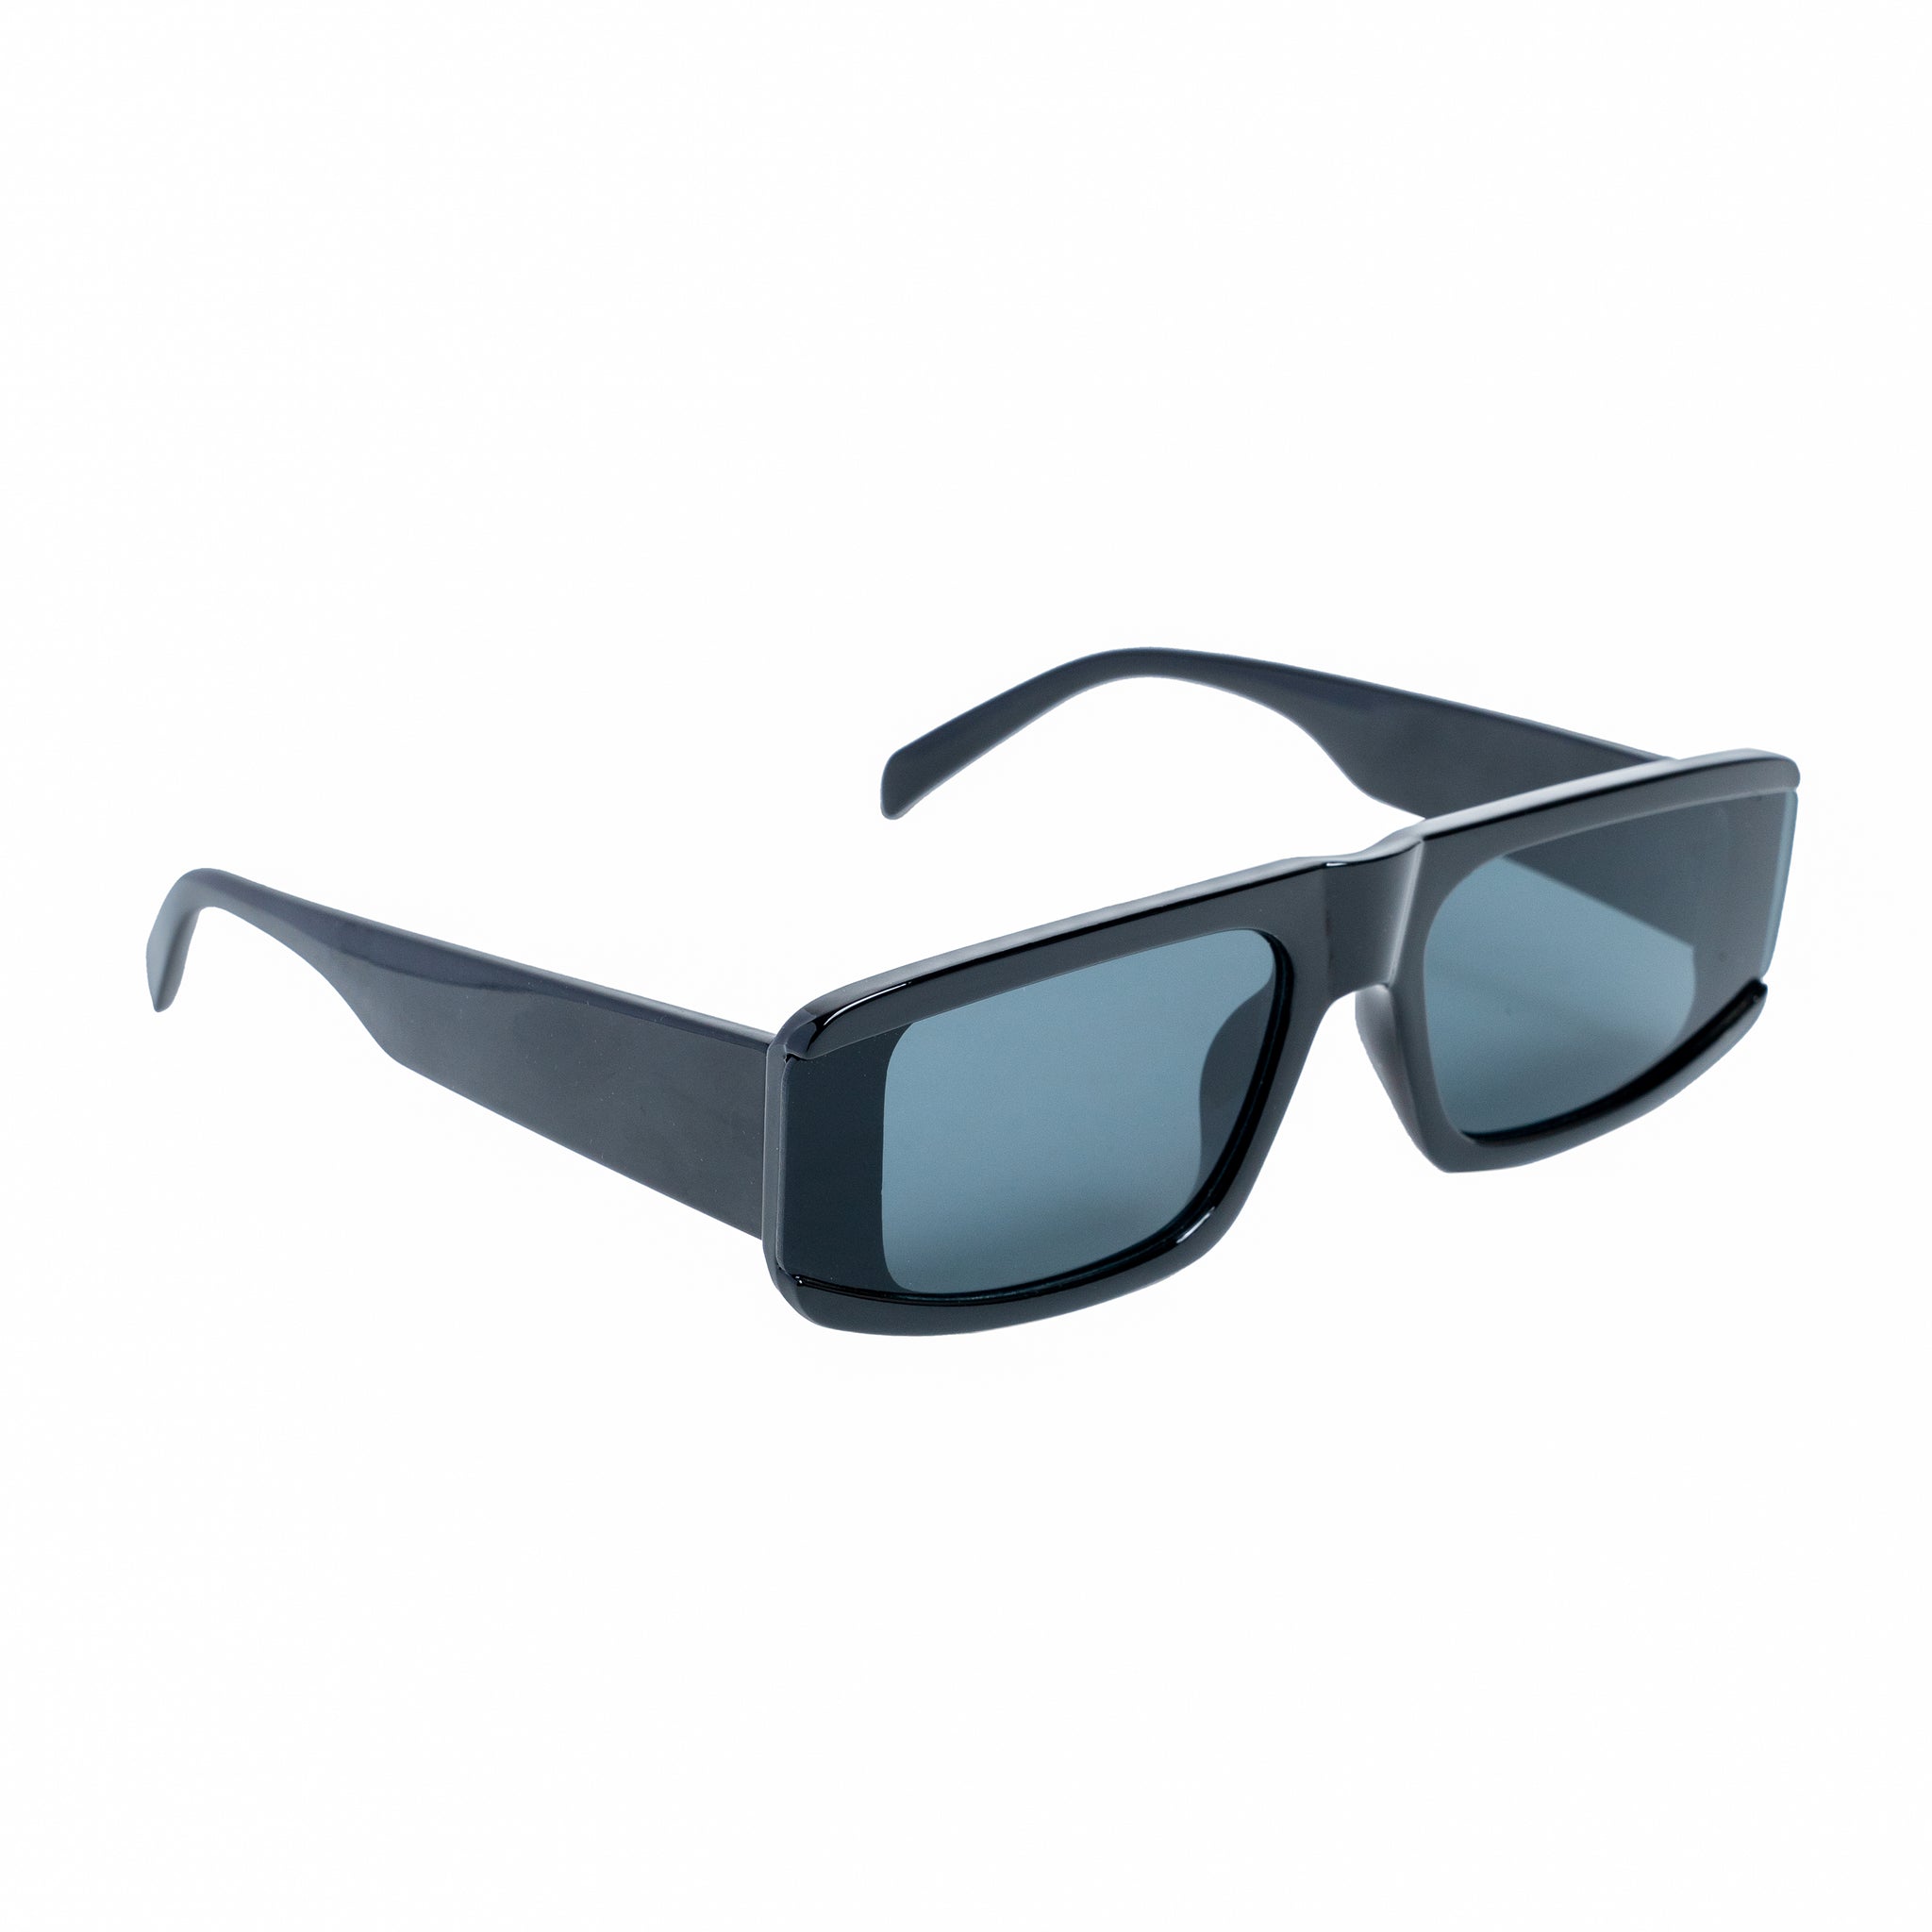 Chokore Tinted Lens Retro Sunglasses (Black)